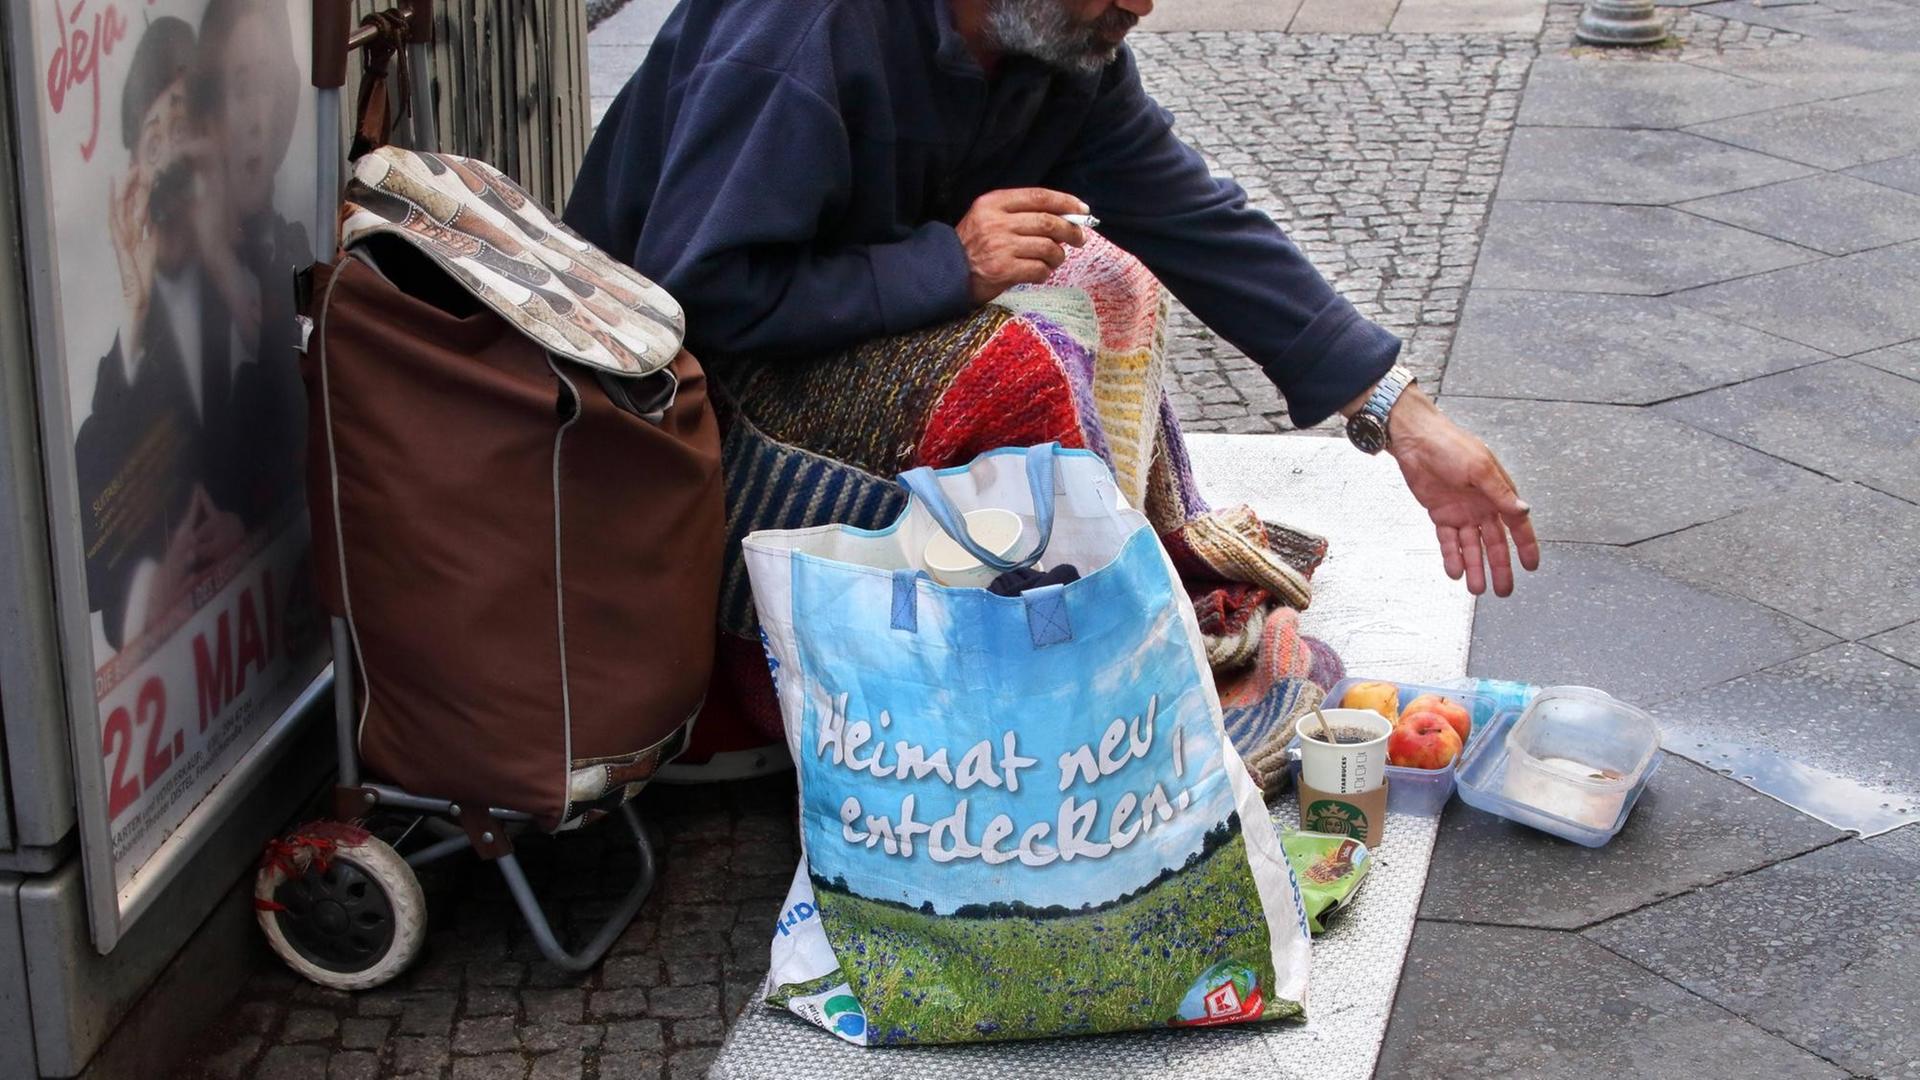 Ein bettelnder Mann bittet Passanten in Berlin-Mitte um Spenden. Obdachlosigkeit und Armut in der Hauptstadt. Immer mehr Menschen leben in Berlin ohne festen Wohnsitz auf der Straße.